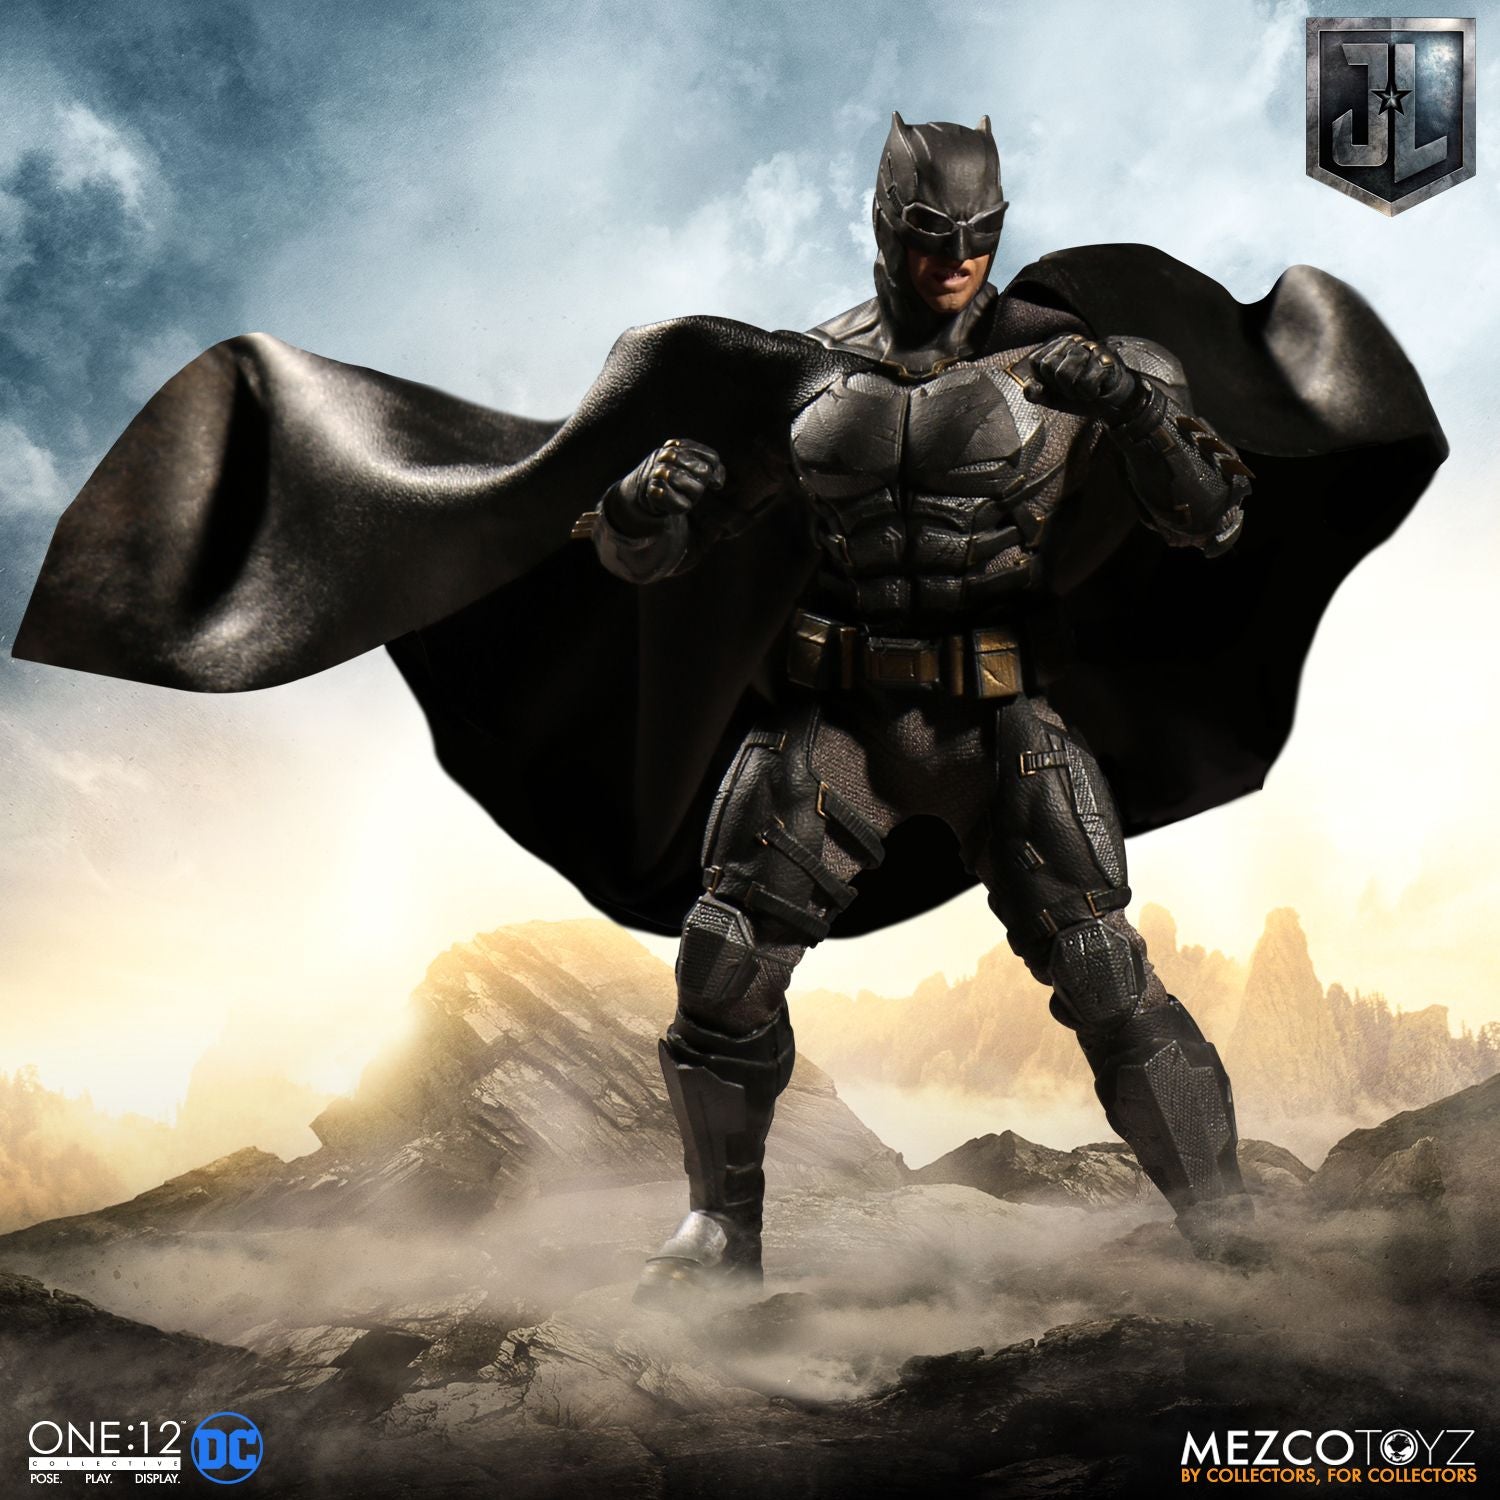 Mezco Toys One:12 Collective: DC Comics Justice League Batman Tactical Suite Action Figure 6